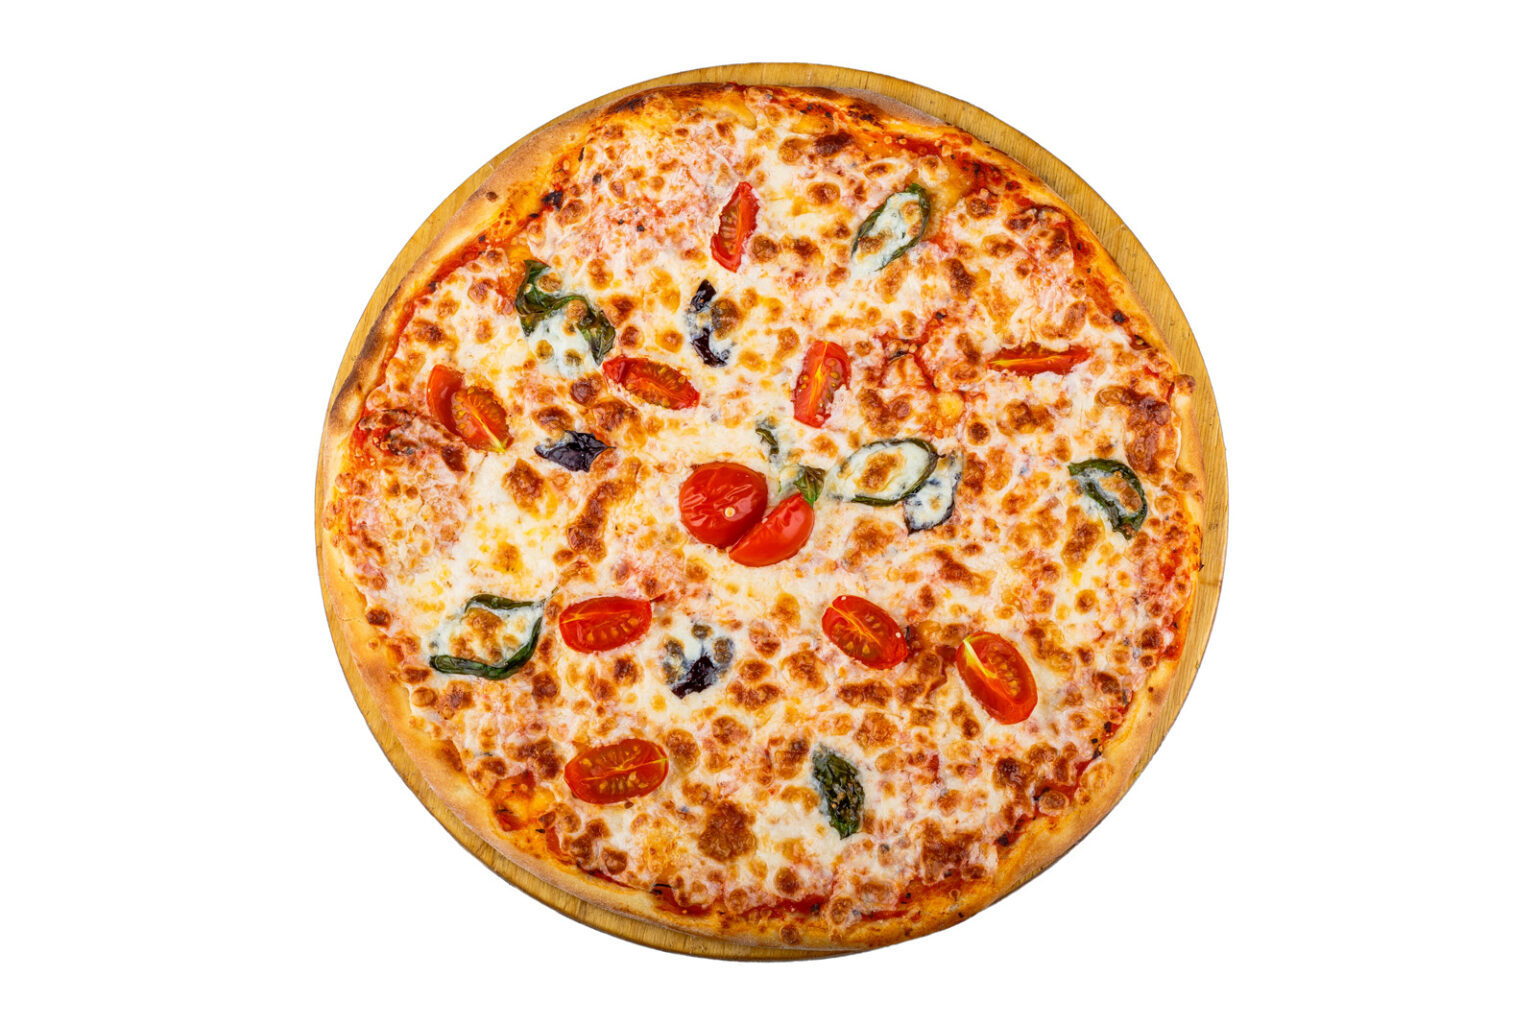 Заказать Пиццу В Минске С Бесплатной Доставкой